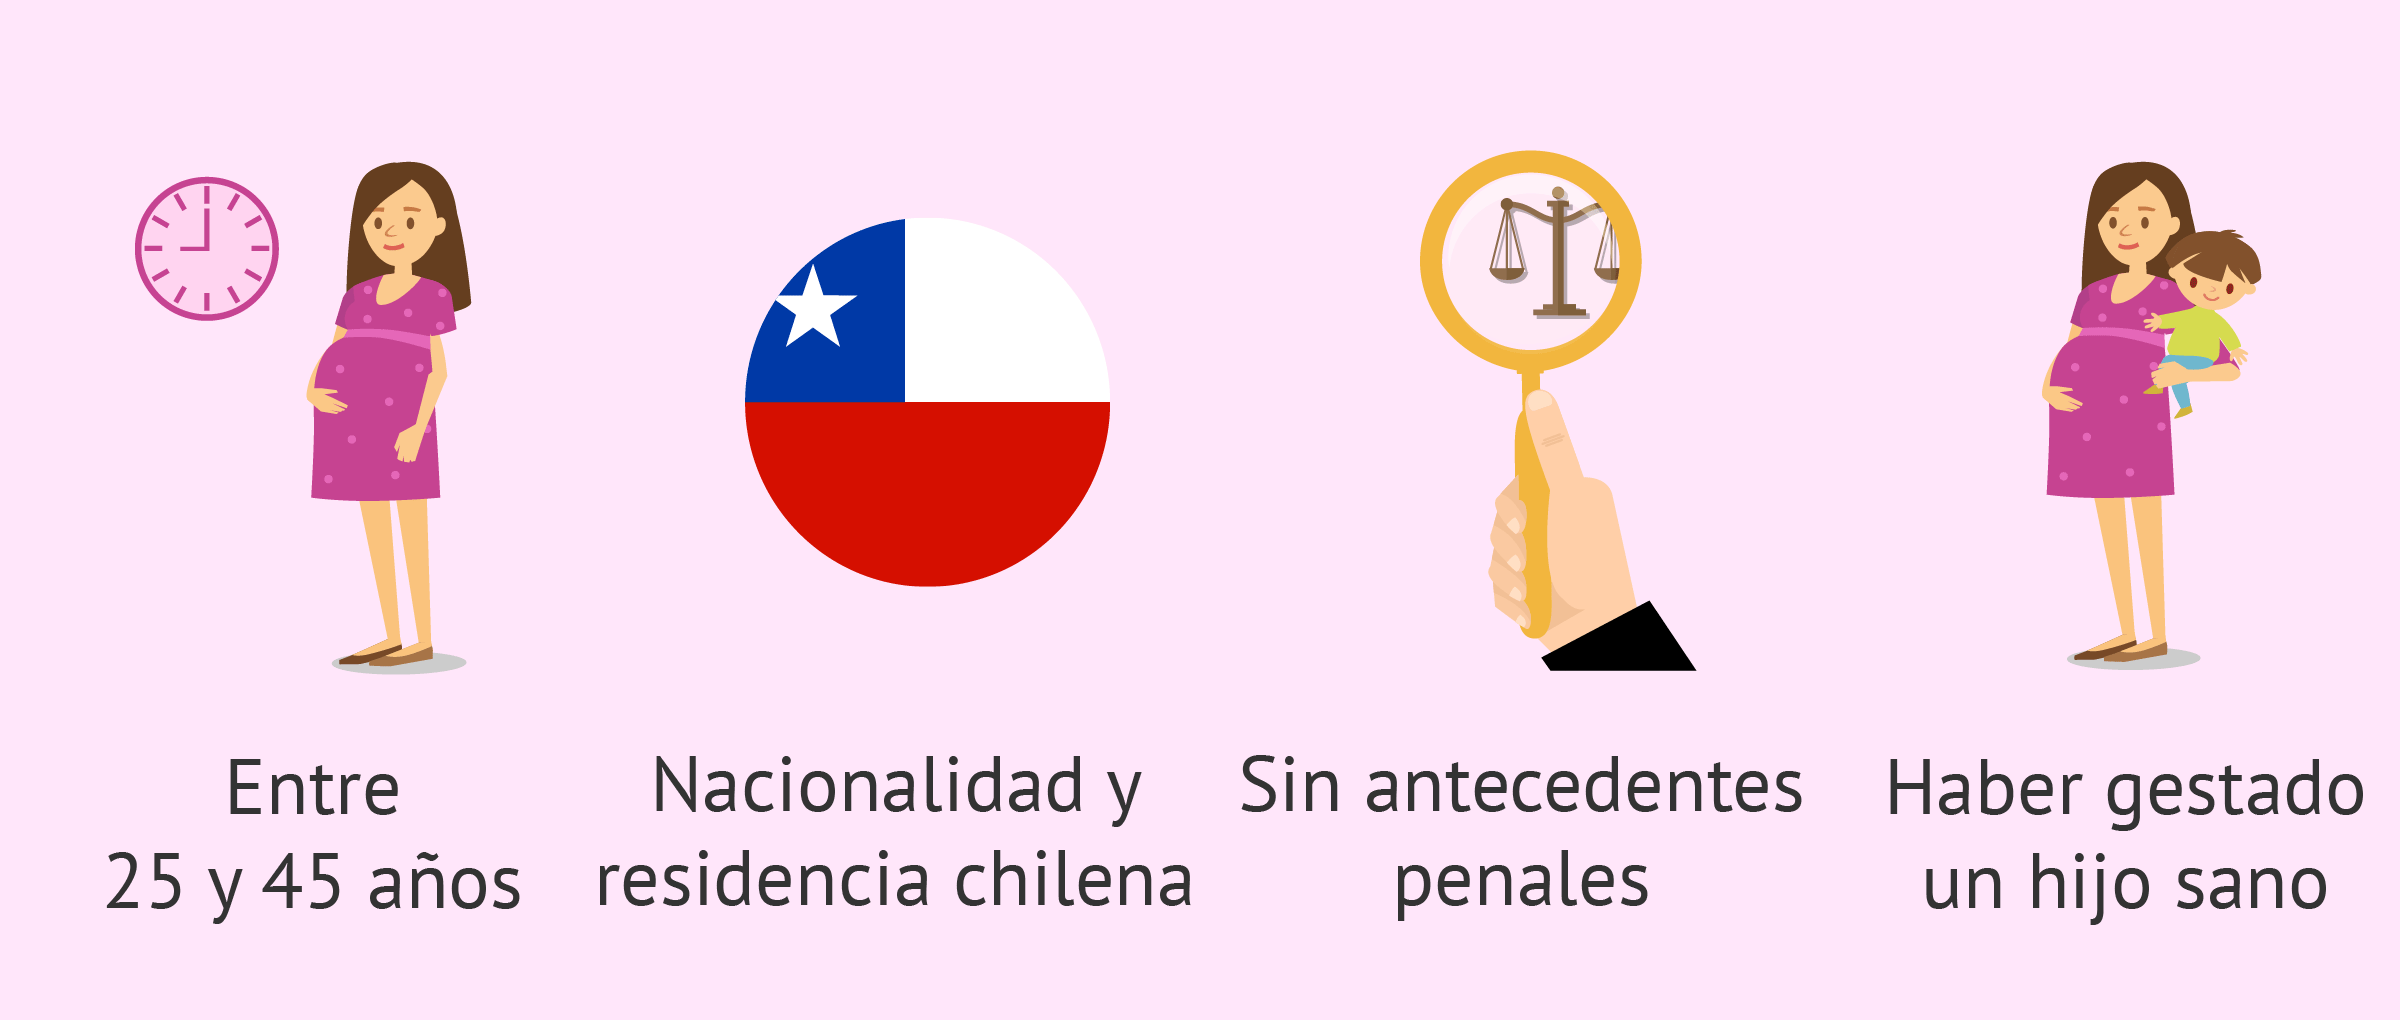 Requisitos para ser gestante subrogada en Chile